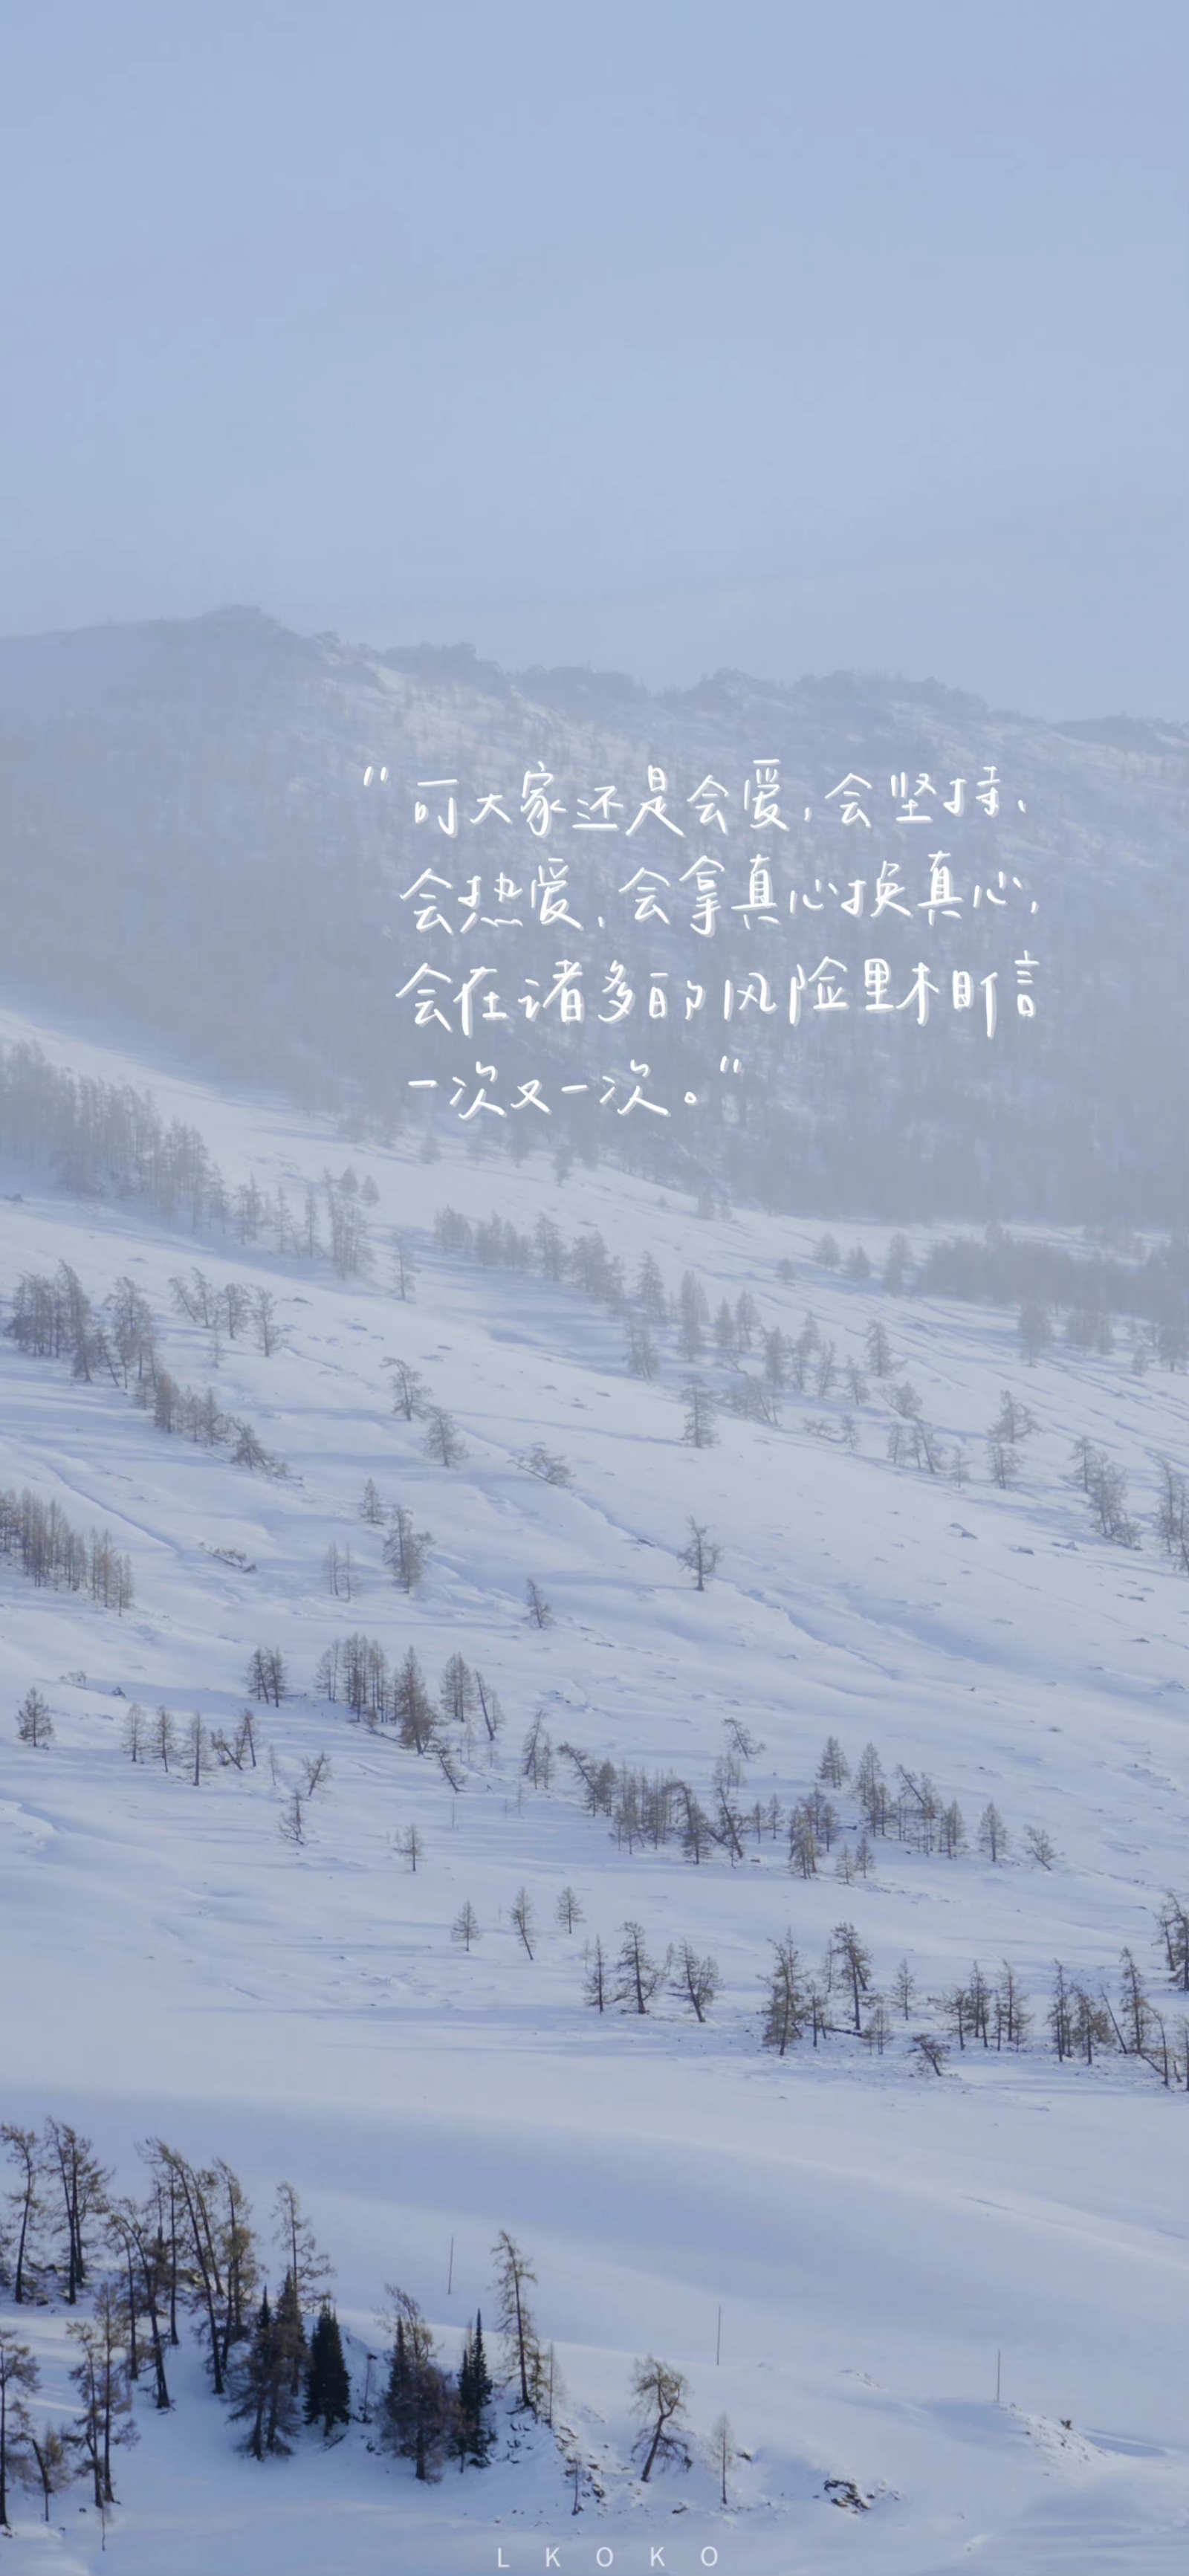 雪景/手写文字 壁纸 ©鹿柯珂 - 堆糖，美图壁纸兴趣社区